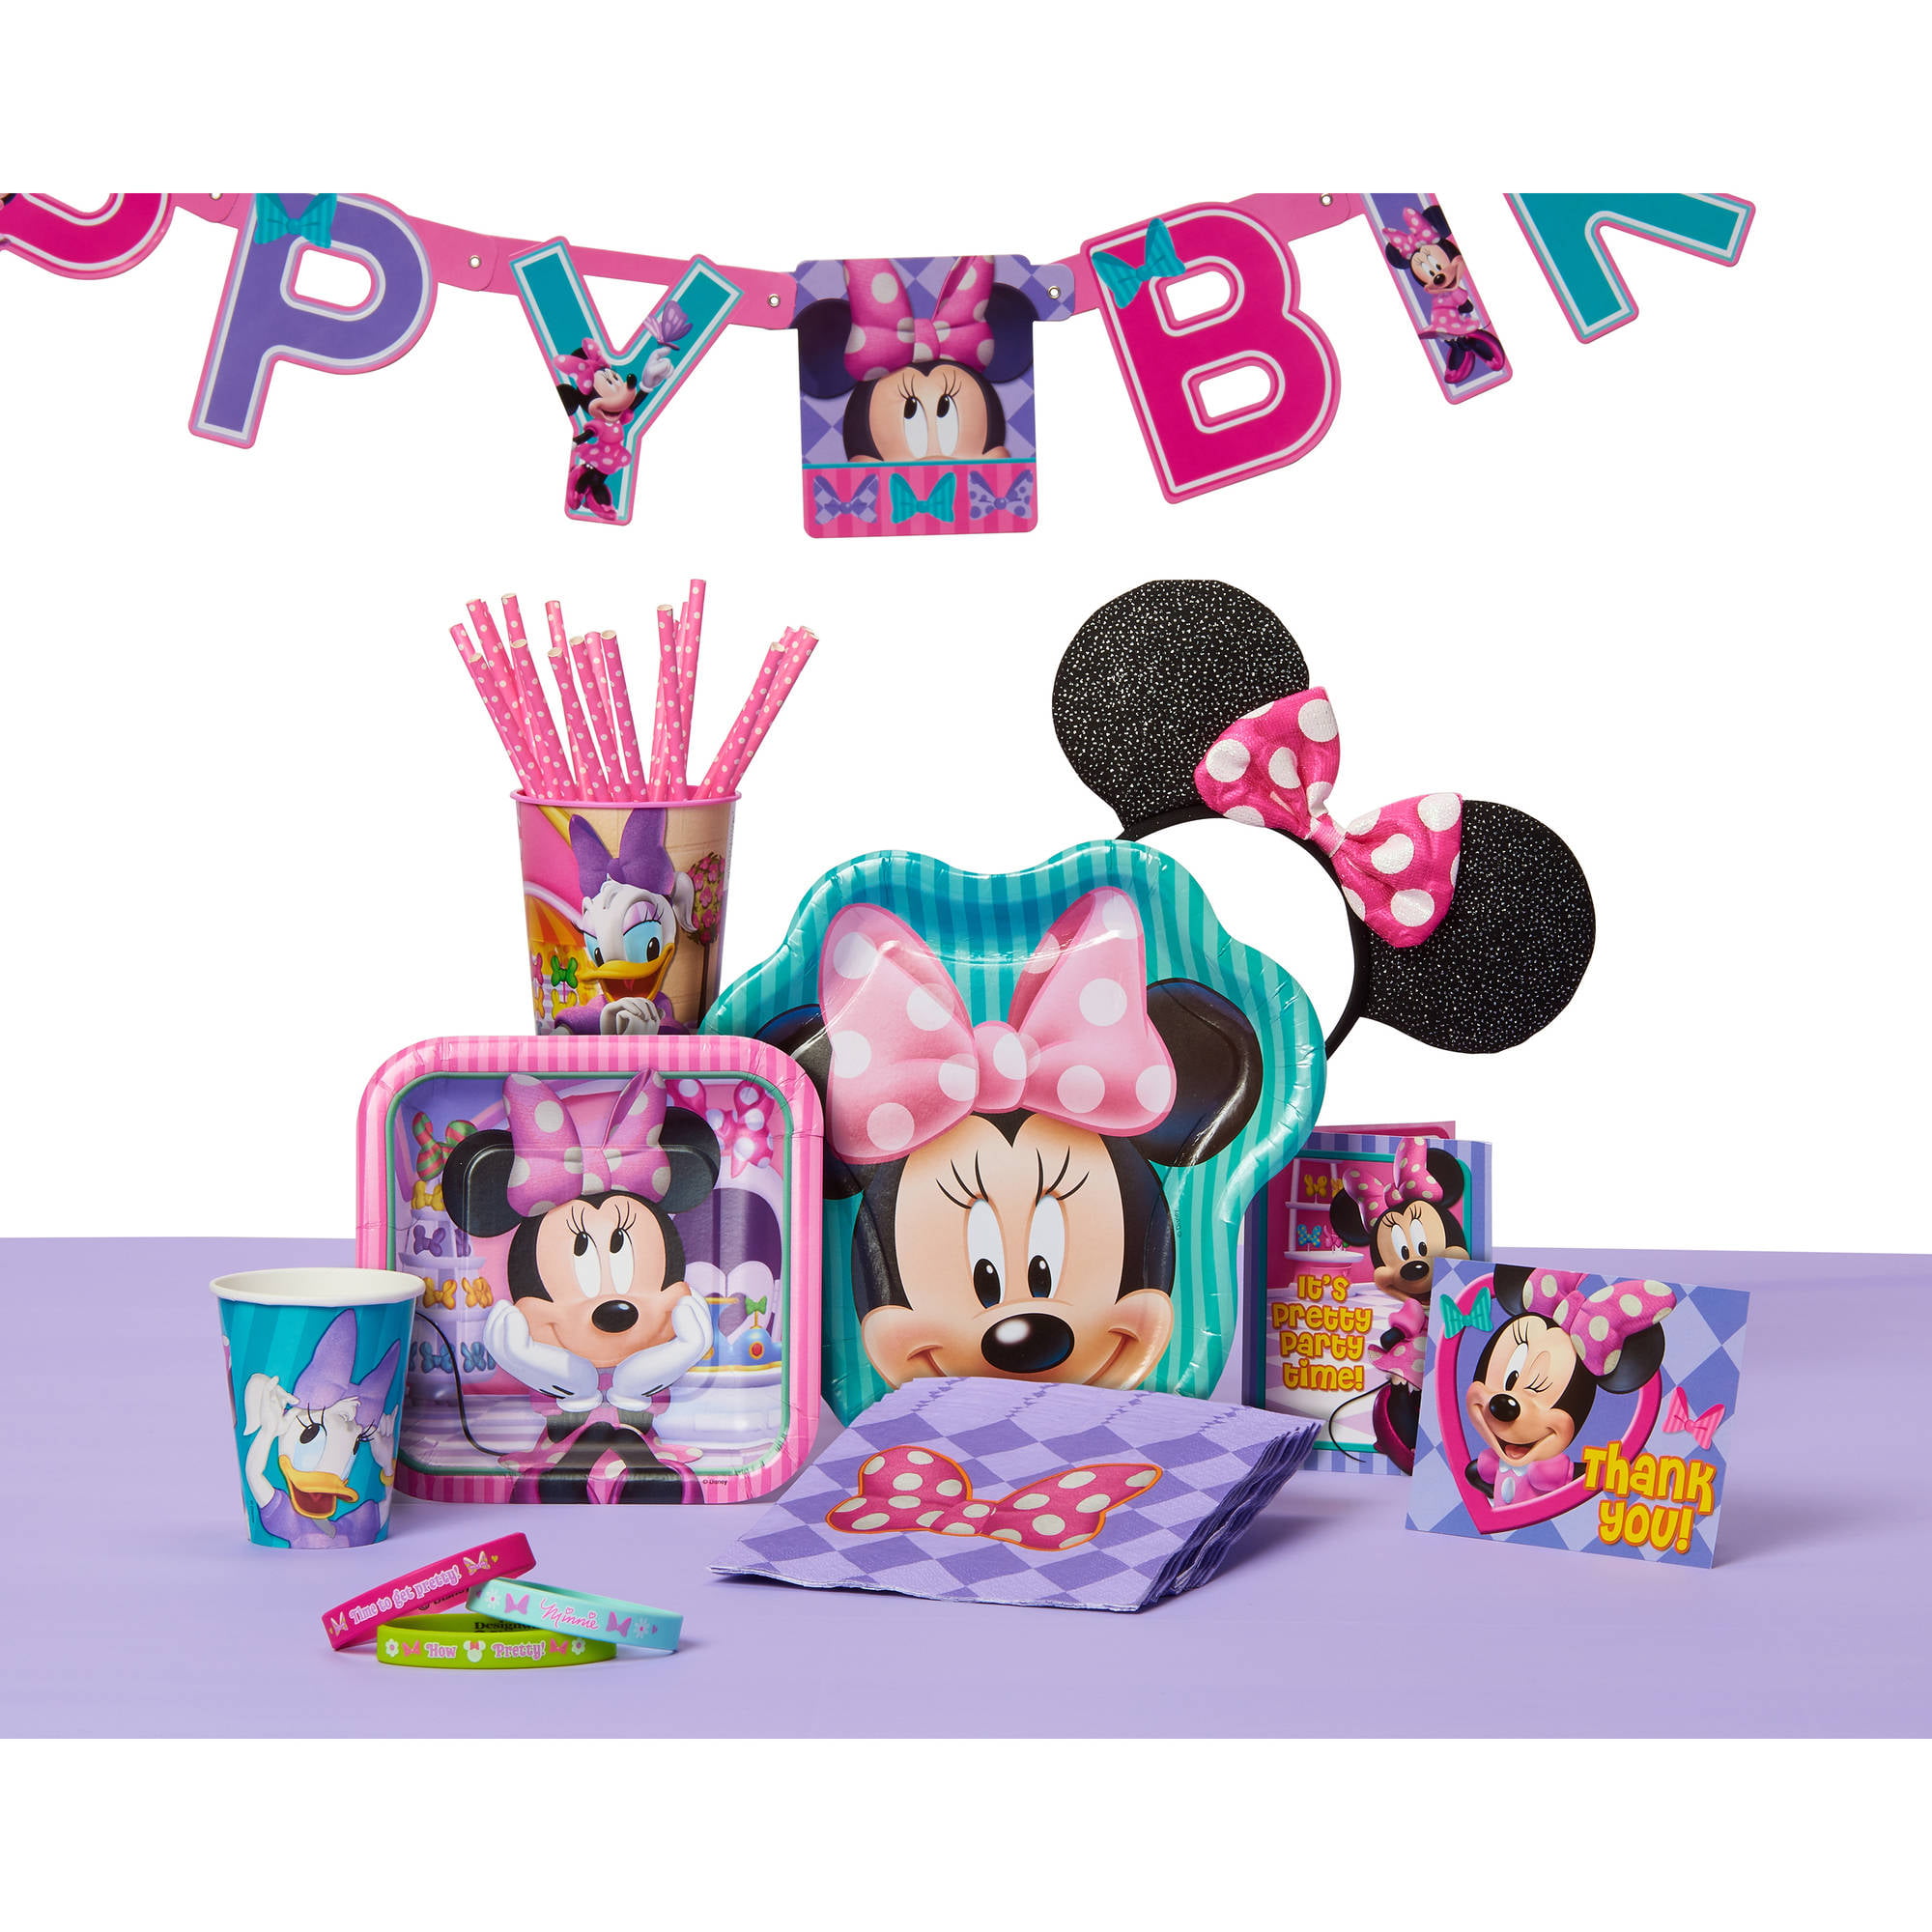 onderwijs Oproepen Zoeken Minnie Mouse Bow-Tique Party Room Decorating Kit Value Pack - Walmart.com